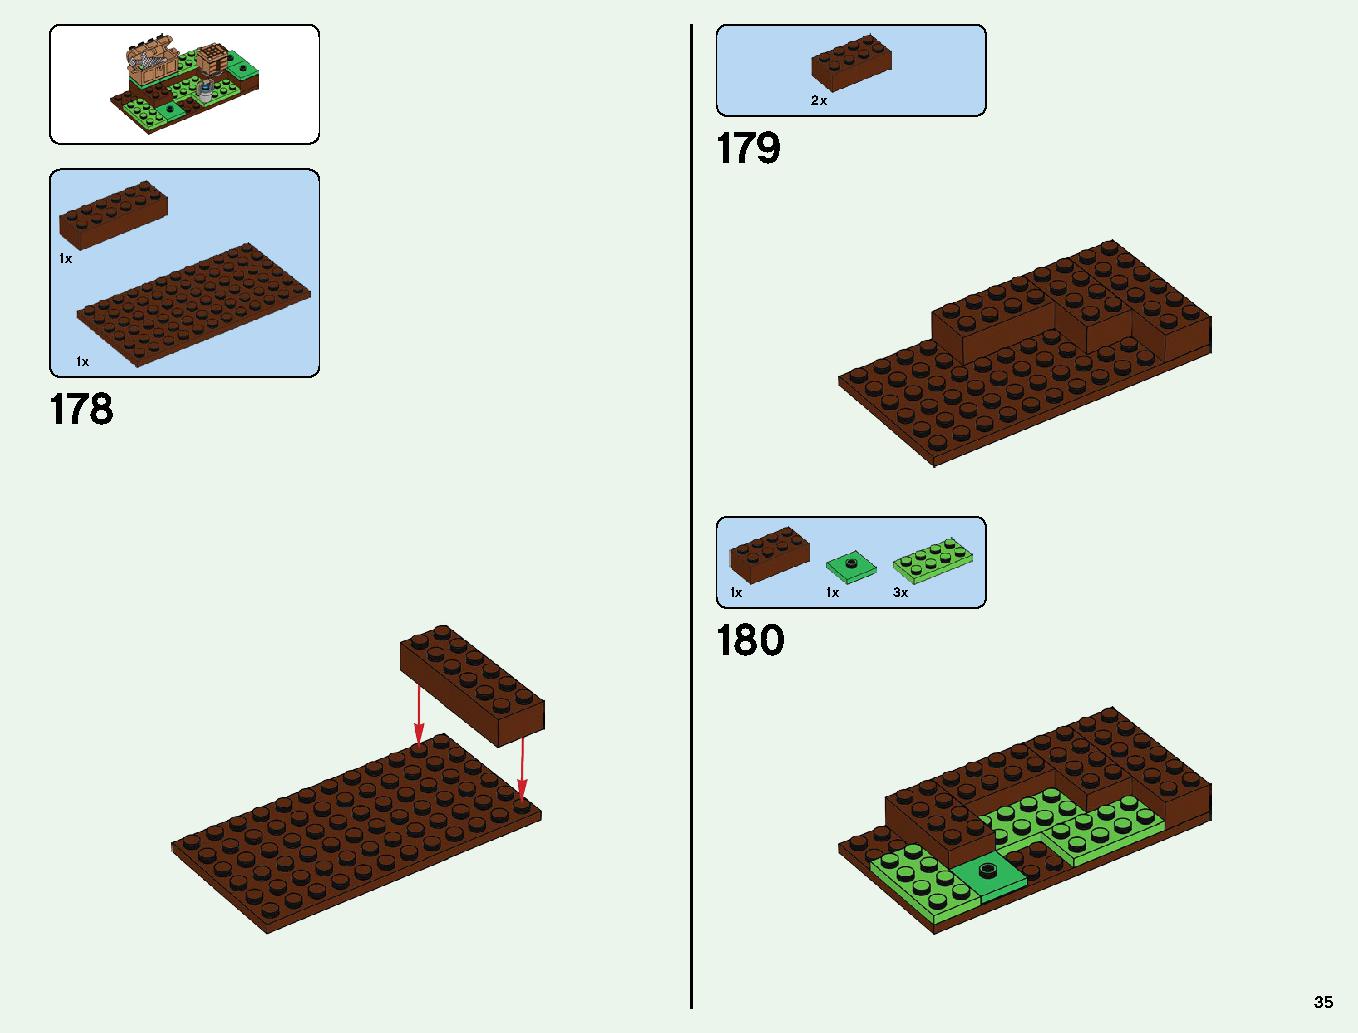 ベッドロックの冒険 21147 レゴの商品情報 レゴの説明書・組立方法 35 page